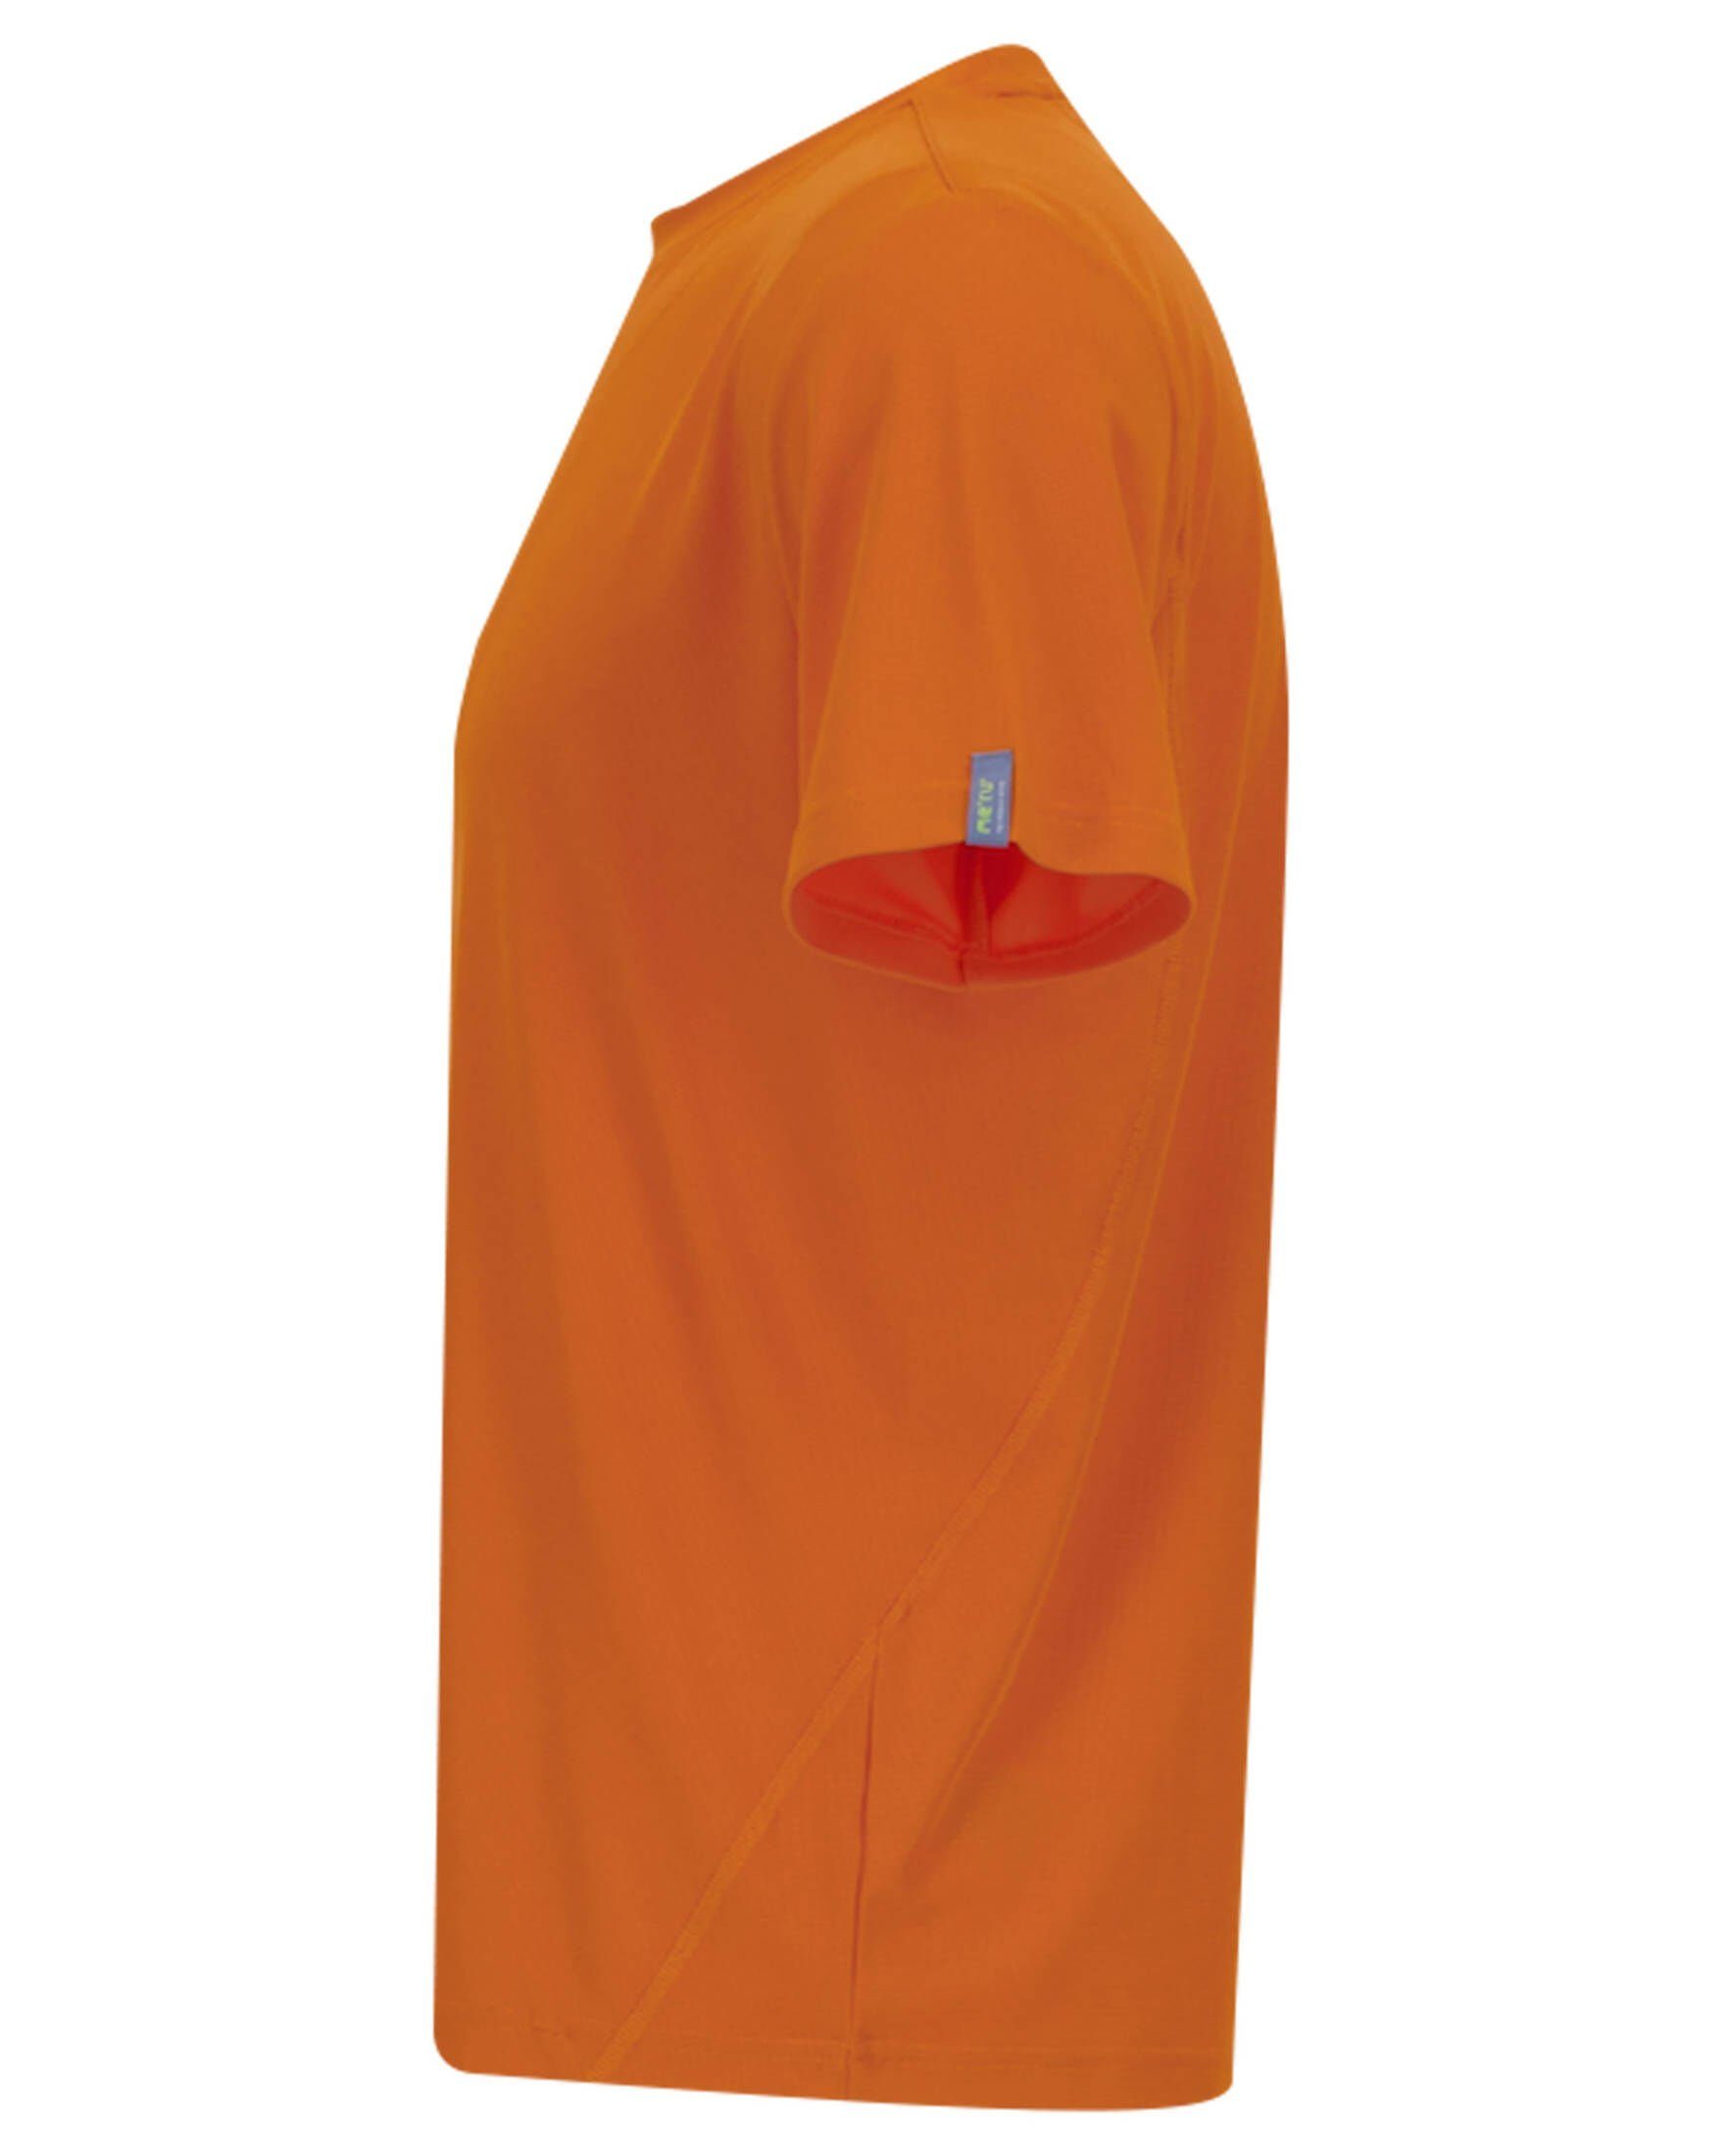 BRISTOL mandarine BASIC orange (506) T-Shirt Meru T-Shirt Herren (1-tlg)